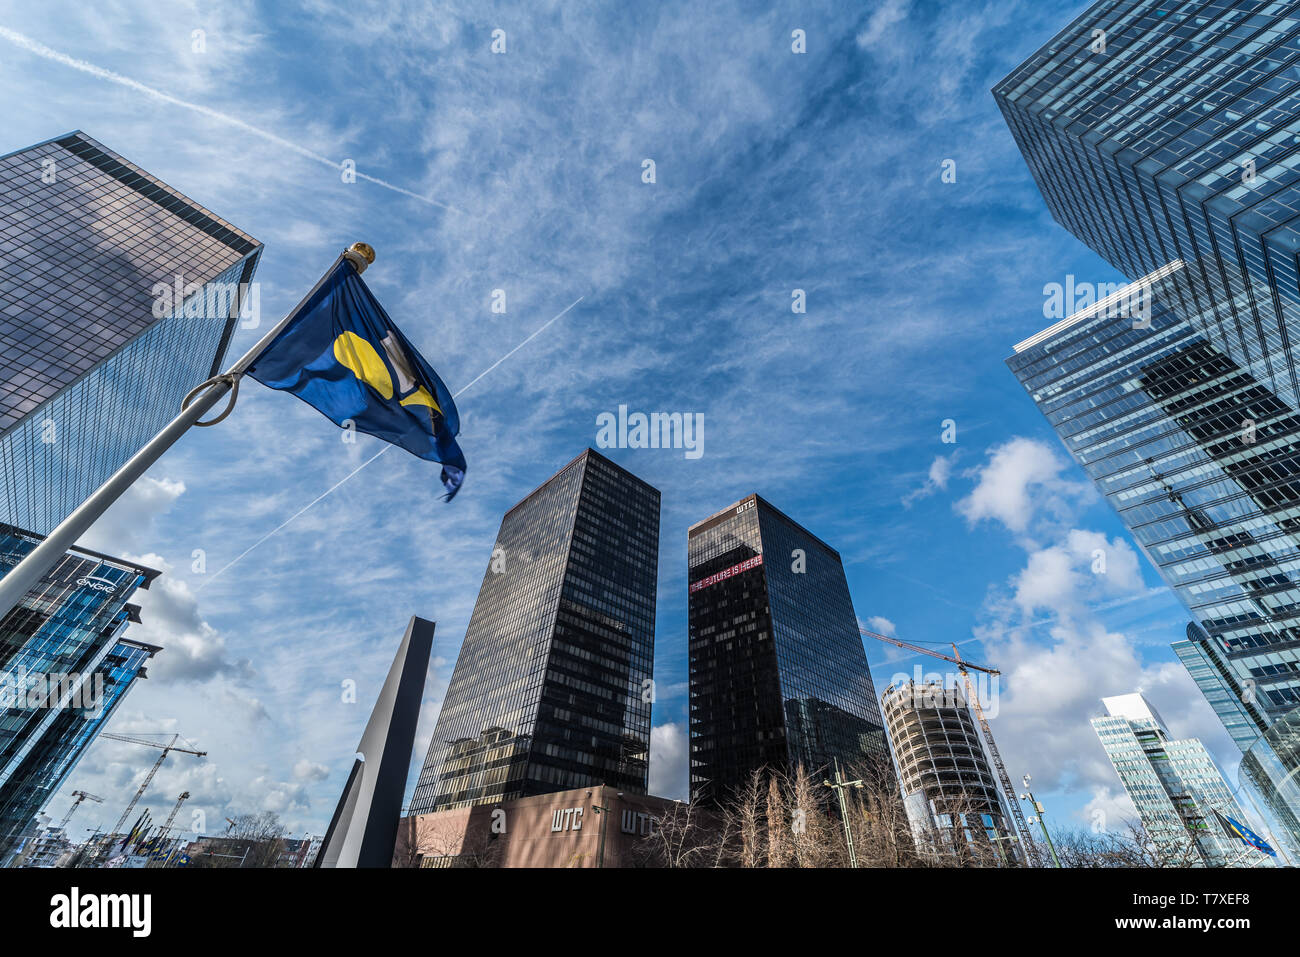 Bruxelles, Belgio - 03 10 2019: Contemporanea in vetro e acciaio grattacieli del poco Manhattan quartiere degli affari con un iride di Bruxelles bandiera Foto Stock